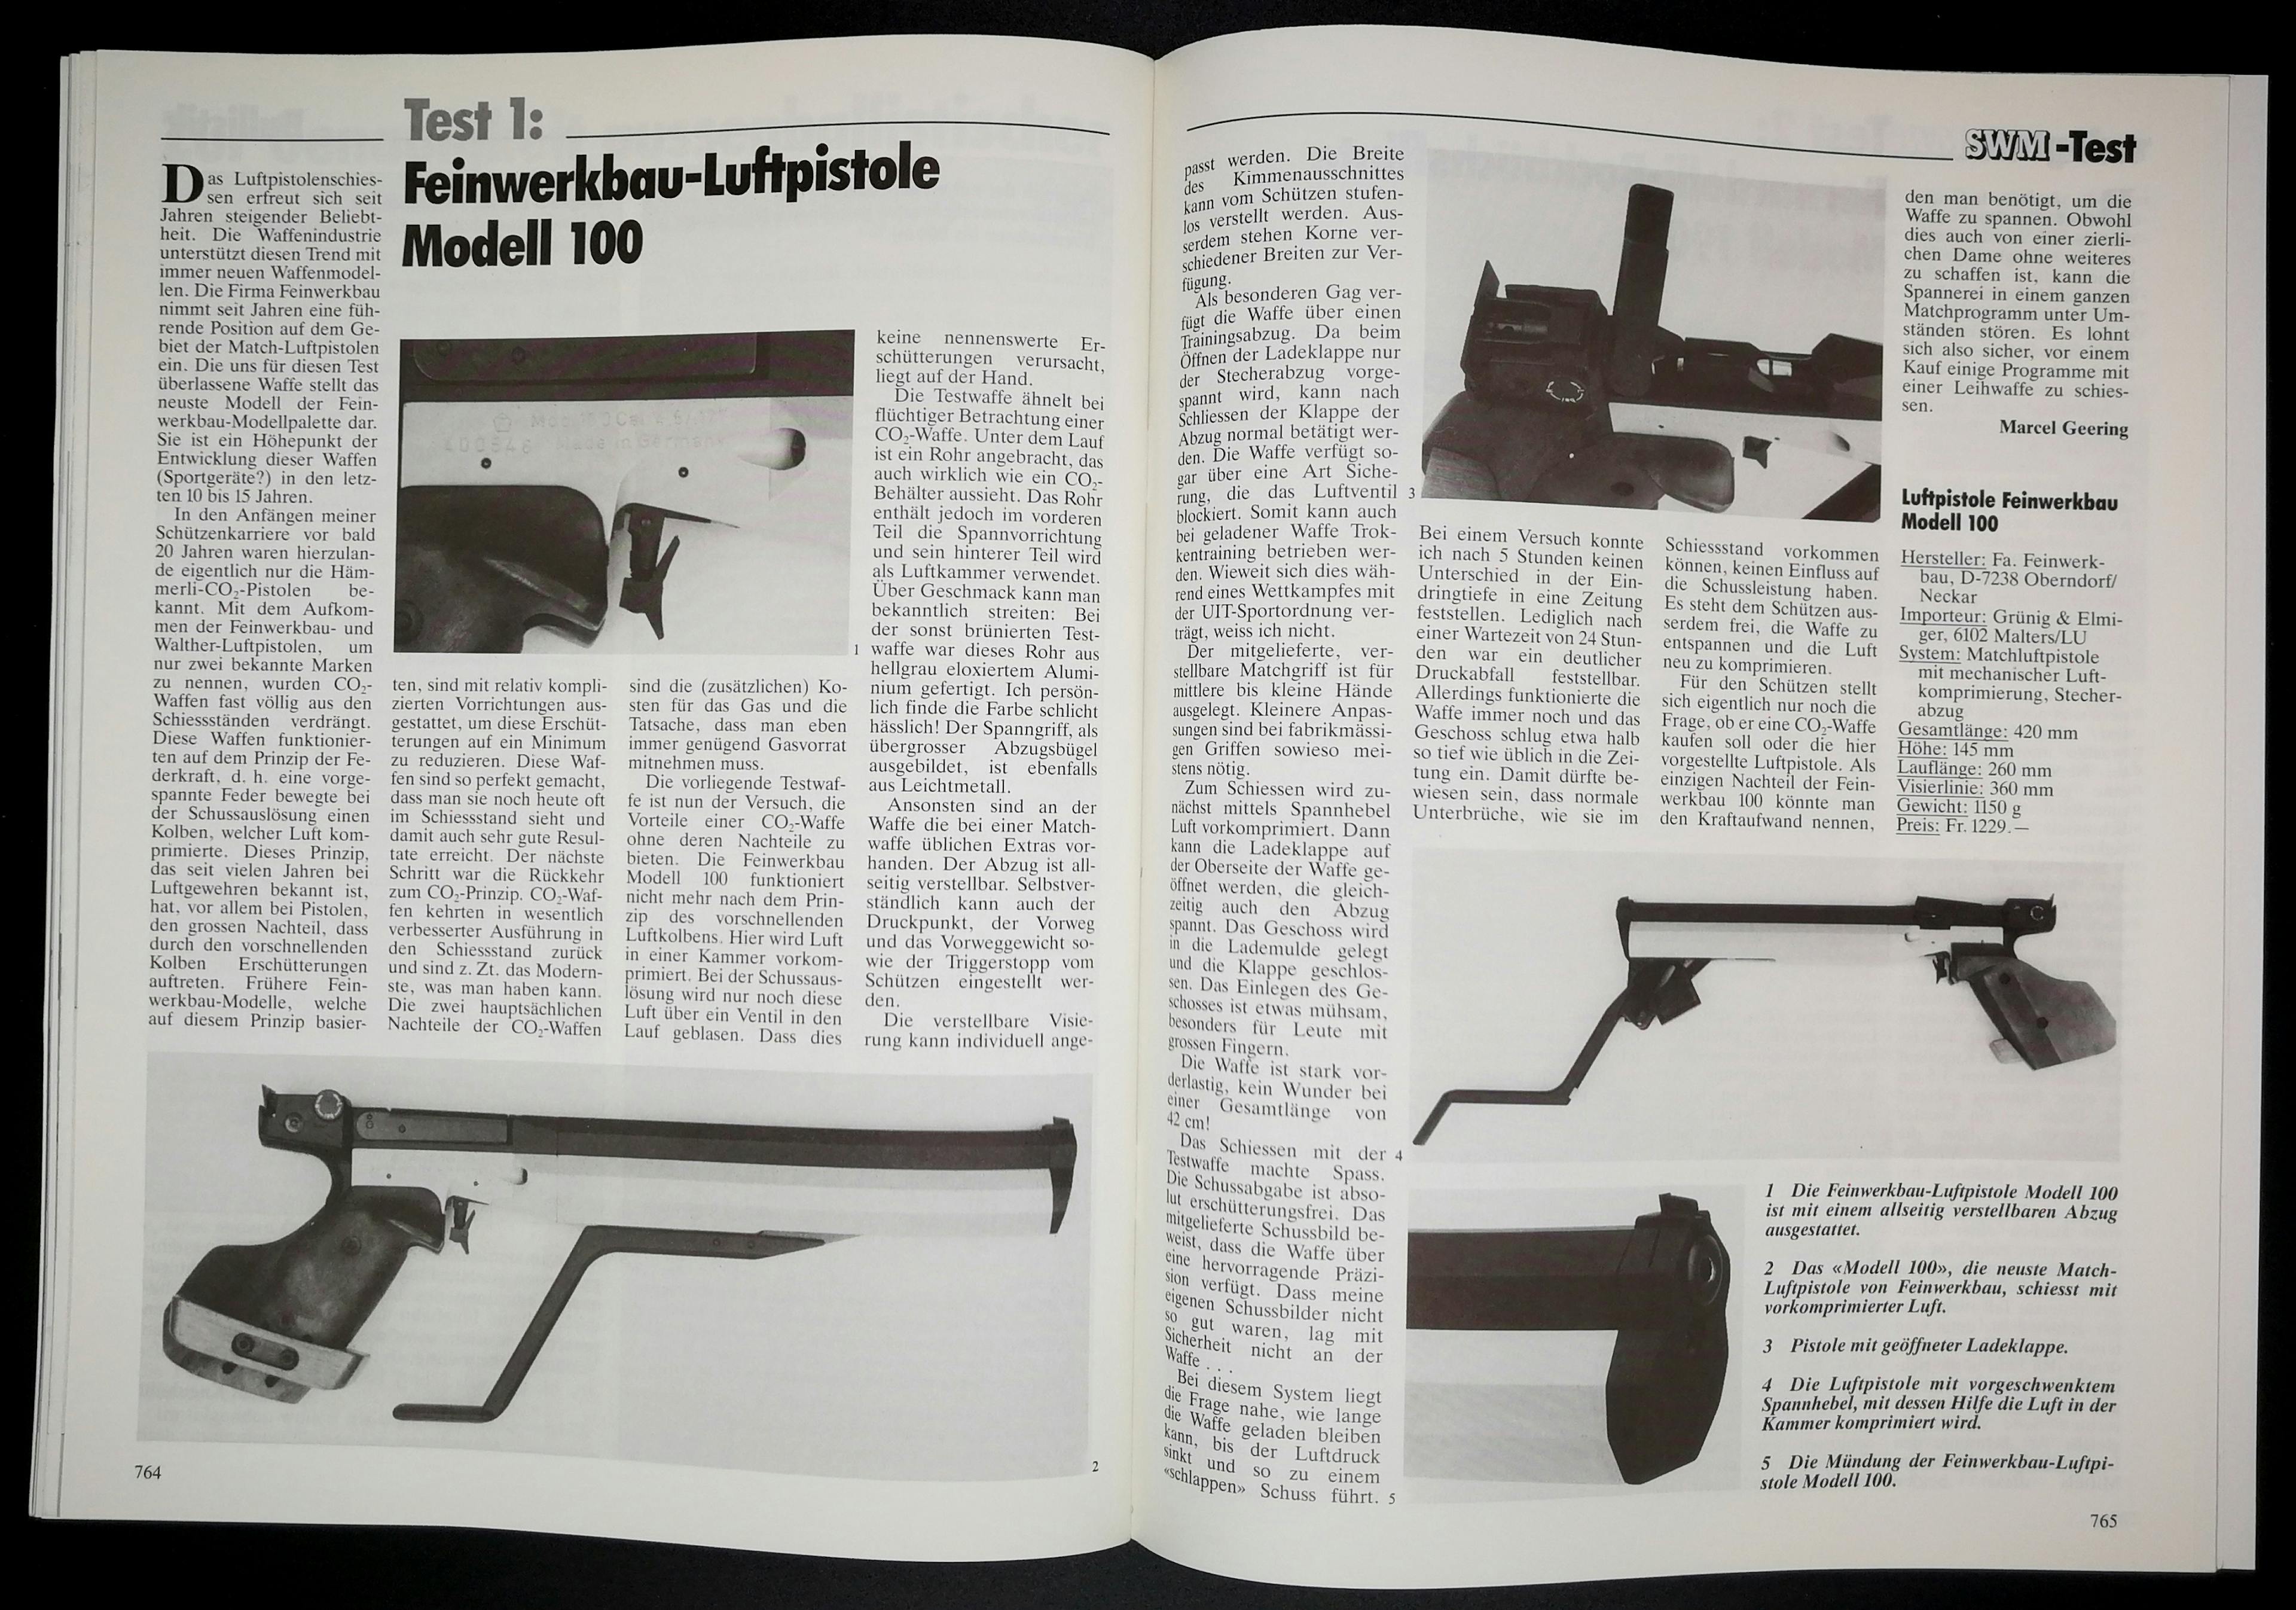 Feinwerkbau Modell 100. Eine Luftpistole der neuesten Generation.
